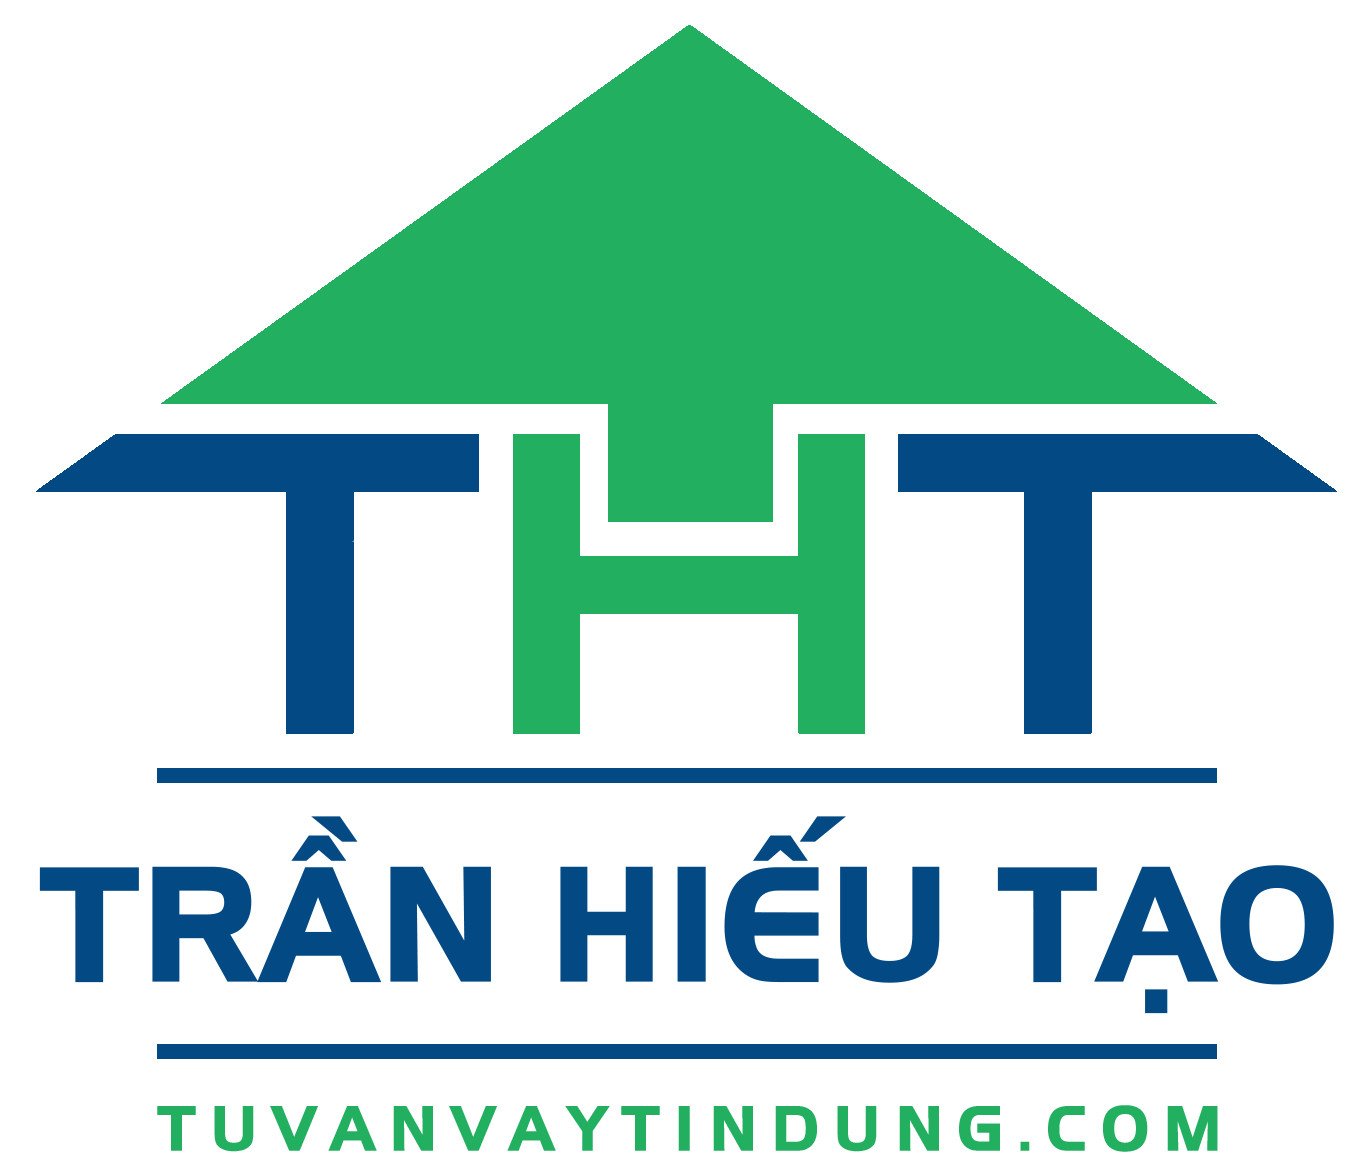 ロゴのTuvanvaytindung Hieuトランは家のようなもので、同名の略称Tran Hieuの作成